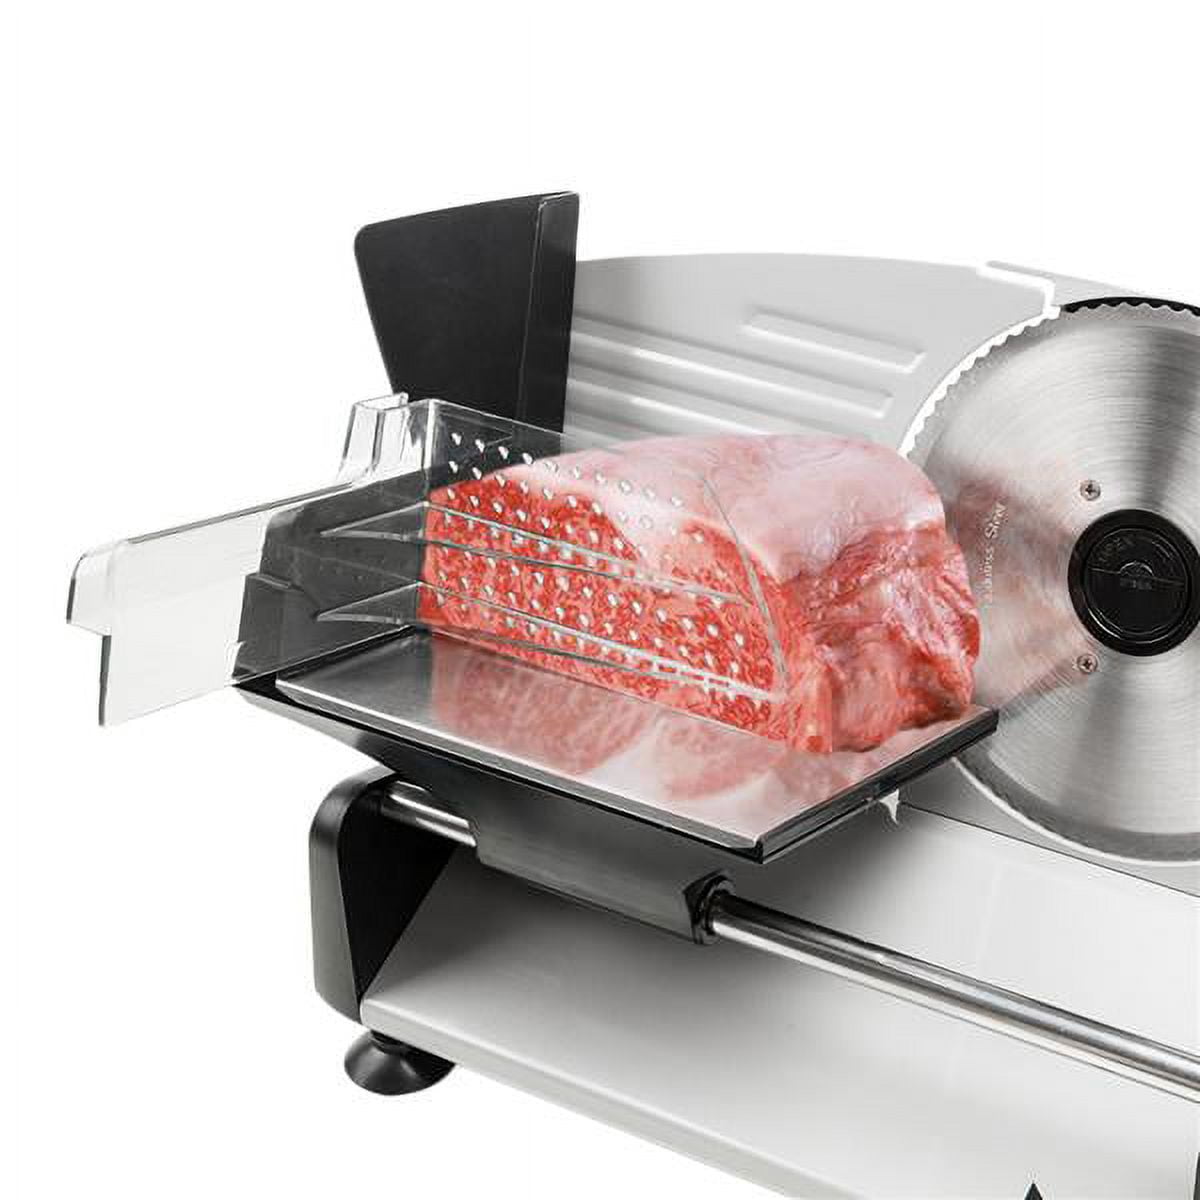 VEVOR 10 inch Electric Meat Slicer for Frozen Meat VEVOR